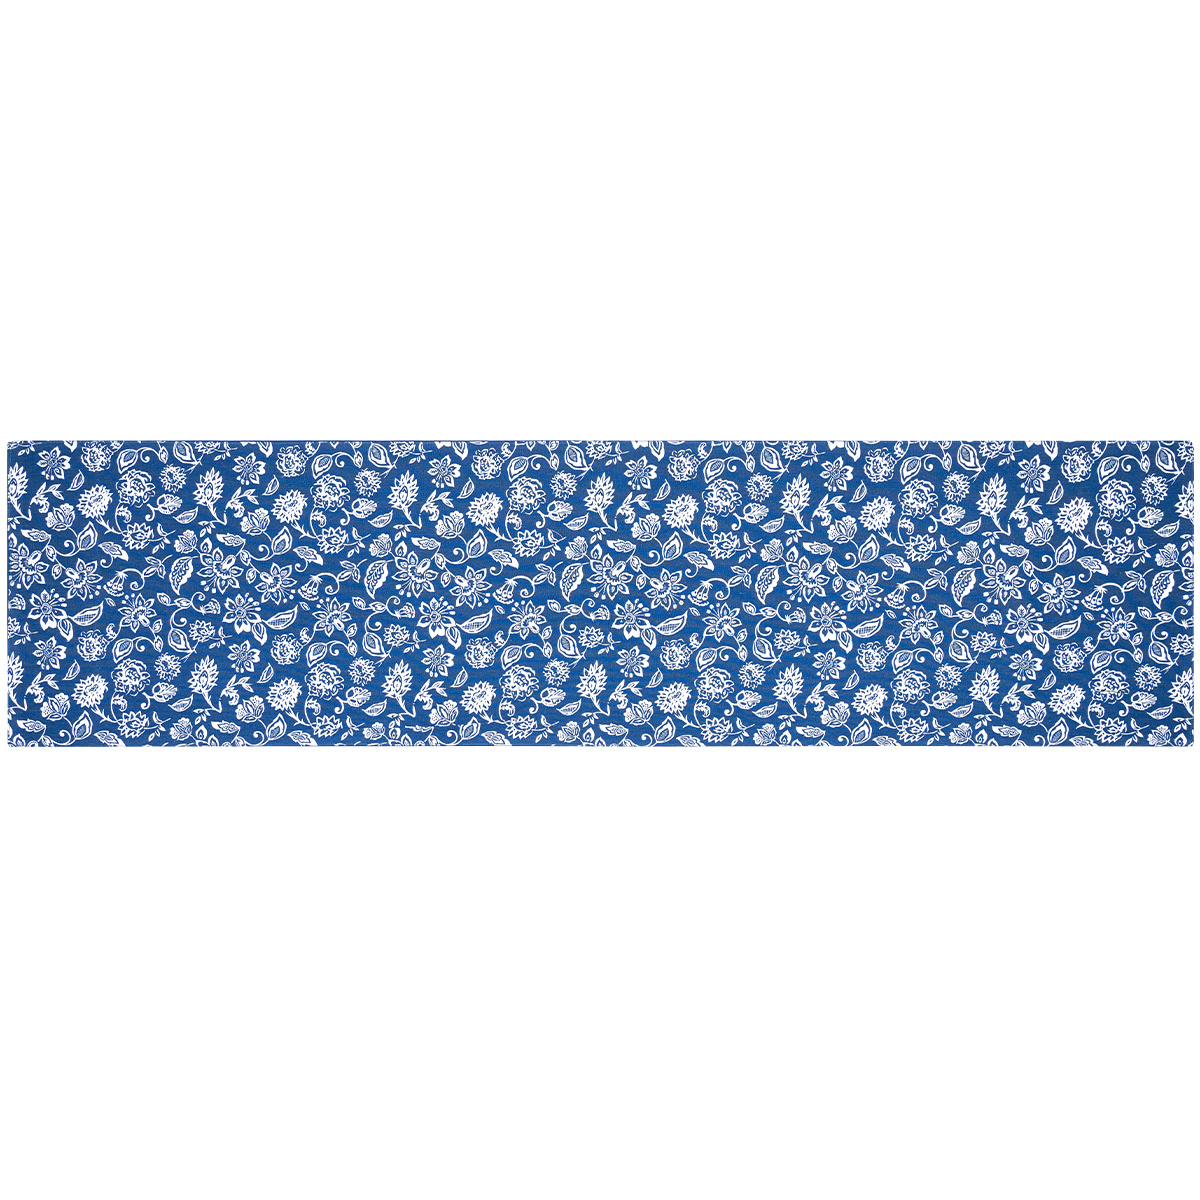 Kék mintás asztali futó, 33 x 130 cm